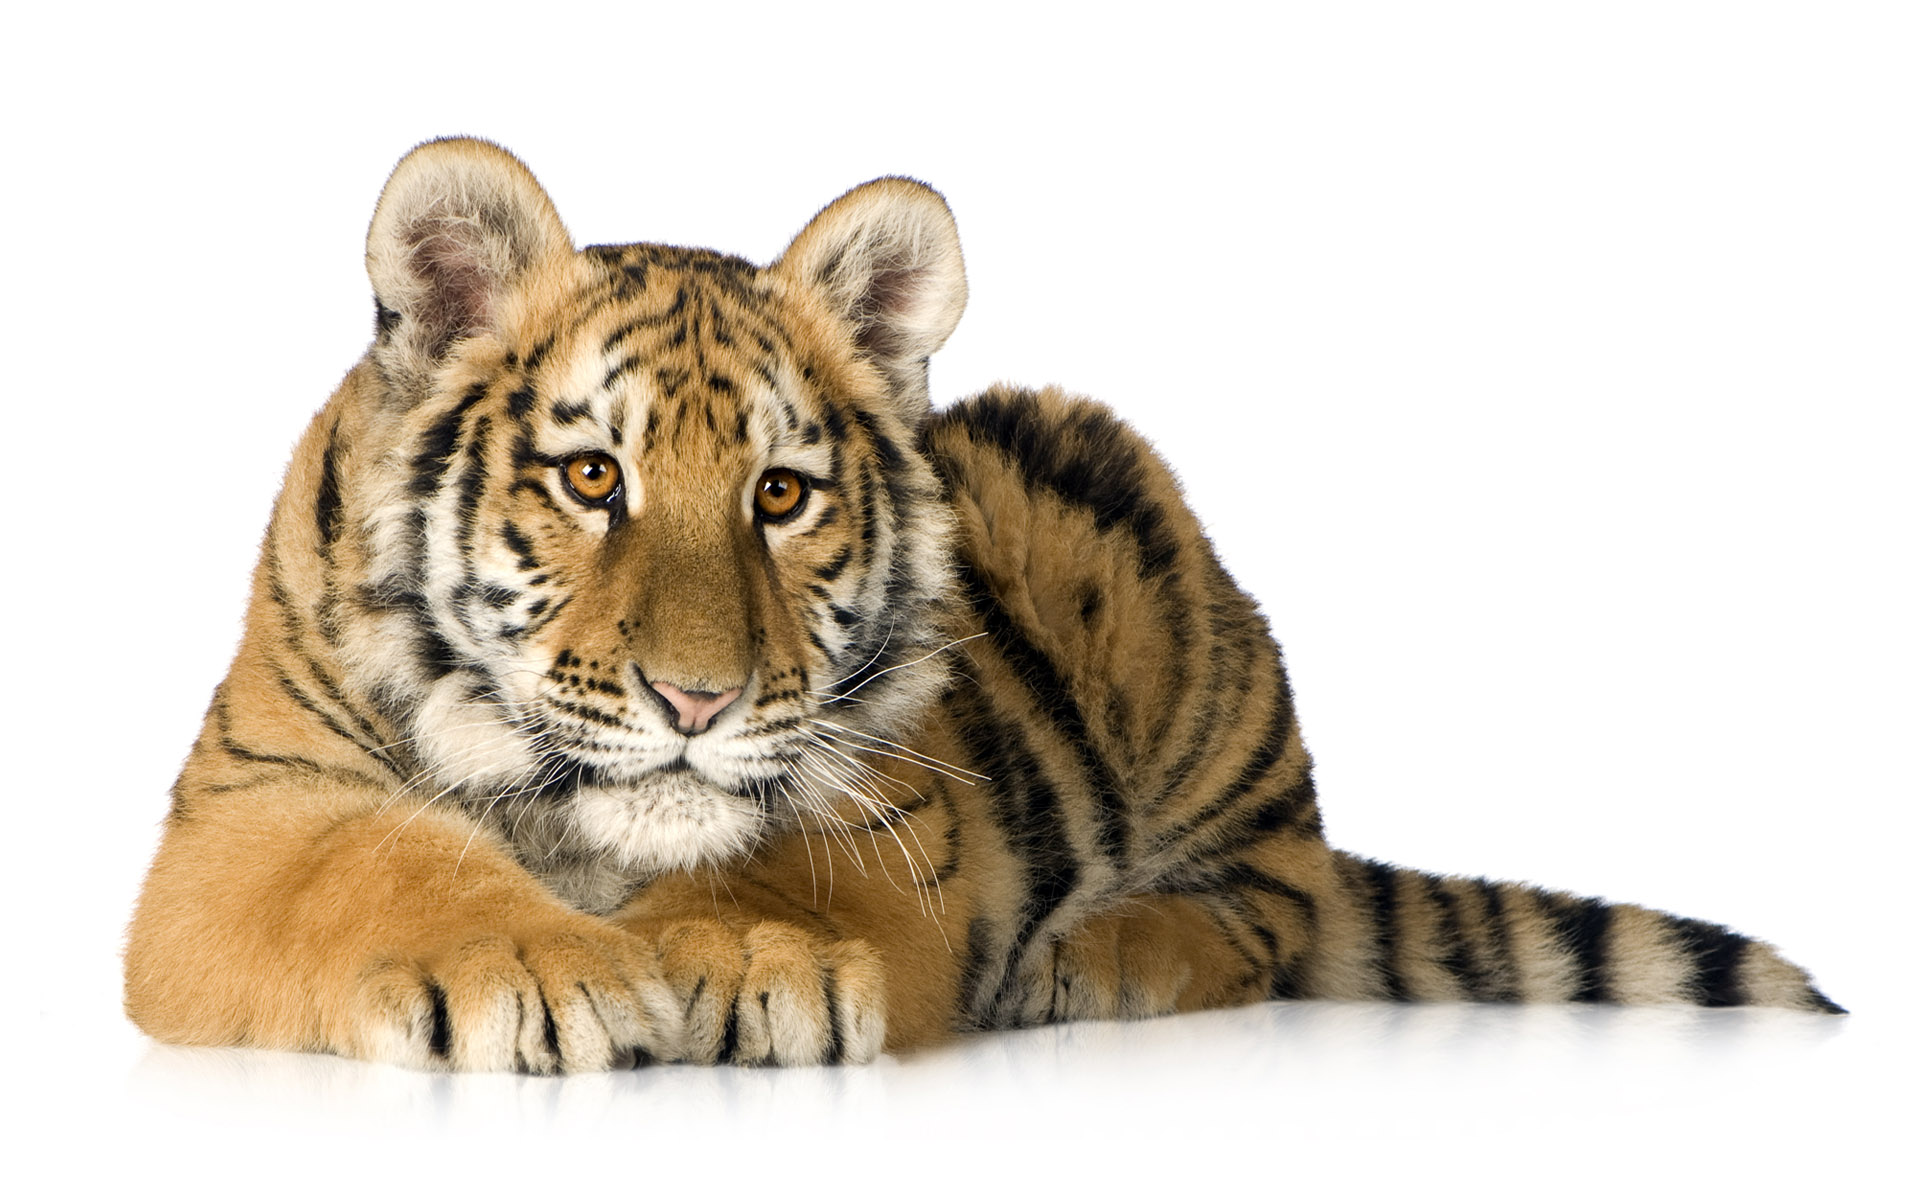 Скачать обои бесплатно Животные, Кот, Тигр, Милые, Кошки картинка на рабочий стол ПК